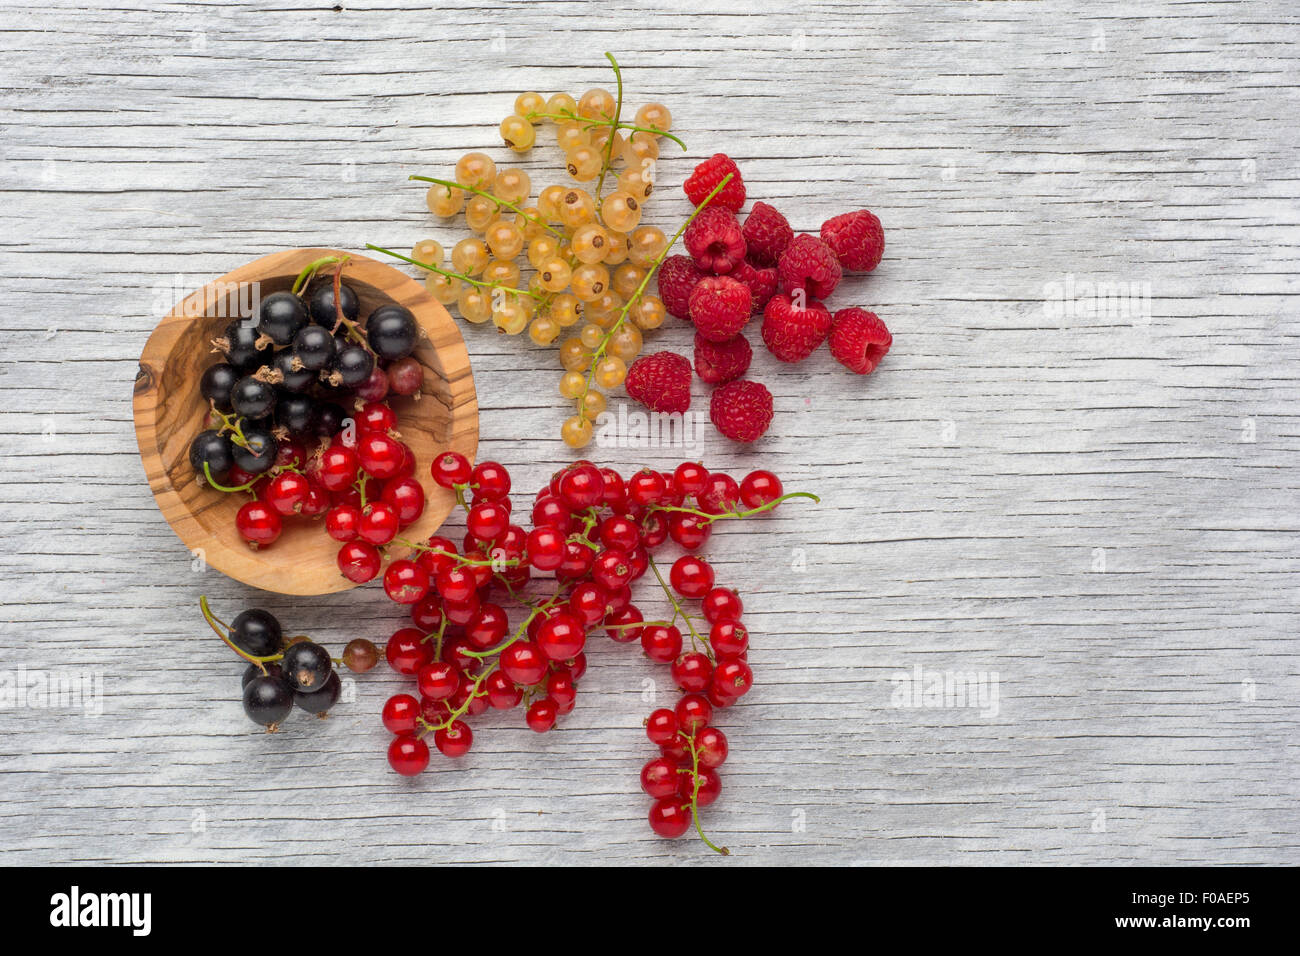 Frutti di bosco in una ciotola. Ribes rosso, ribes nero. Foto macro di bacche. Foto Stock